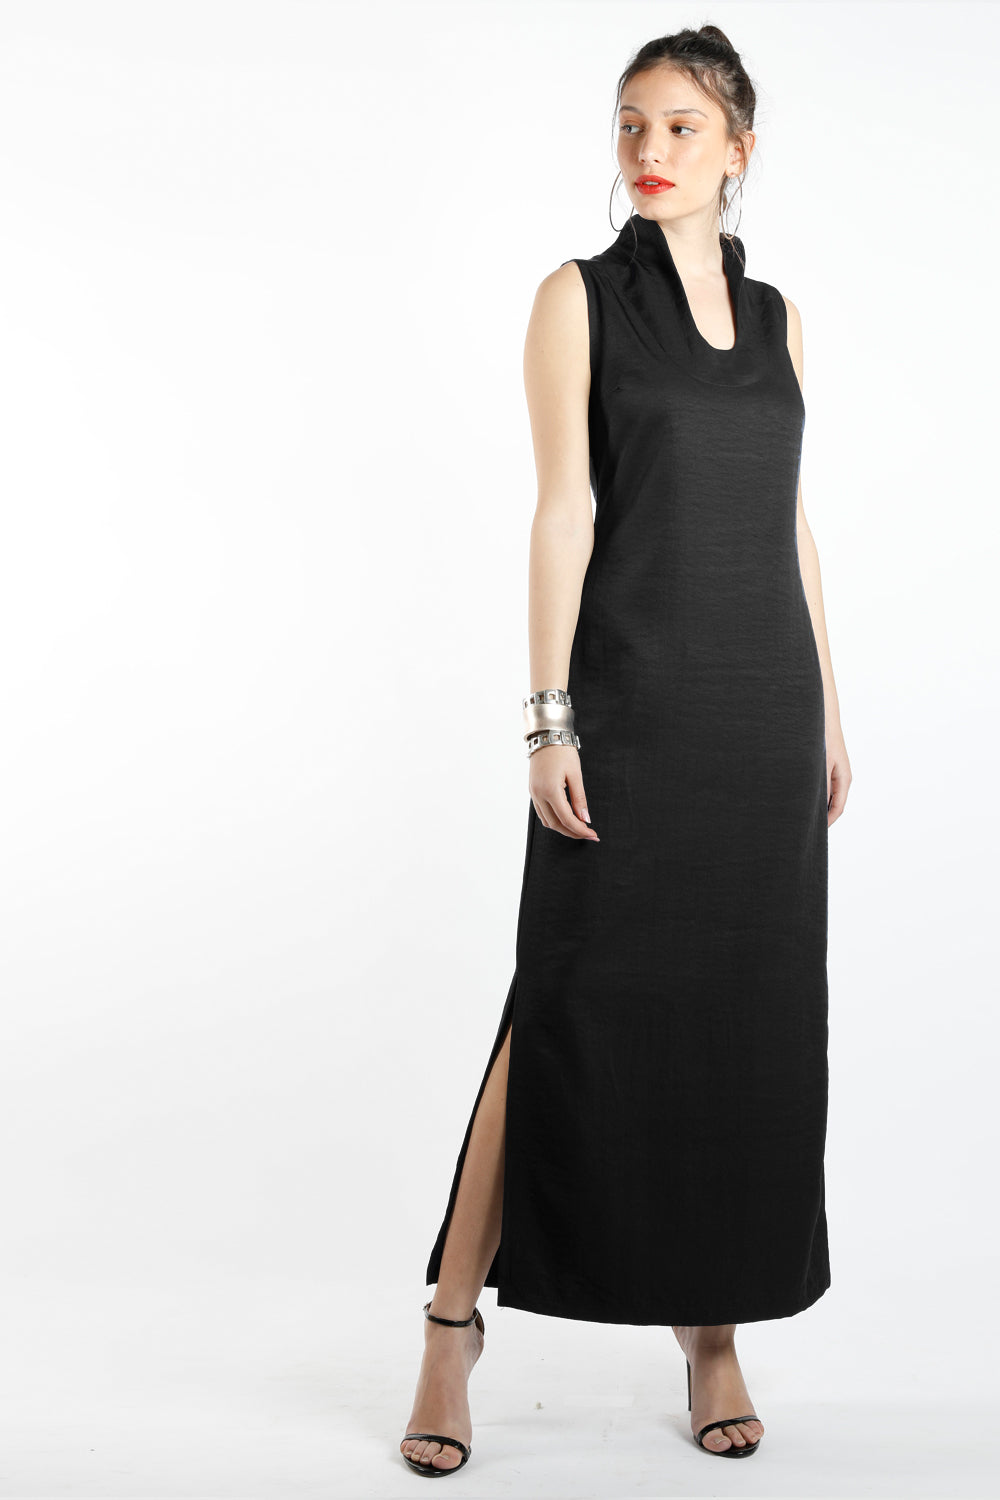 שמלת ערב  מקסי שחורה- ליבלין